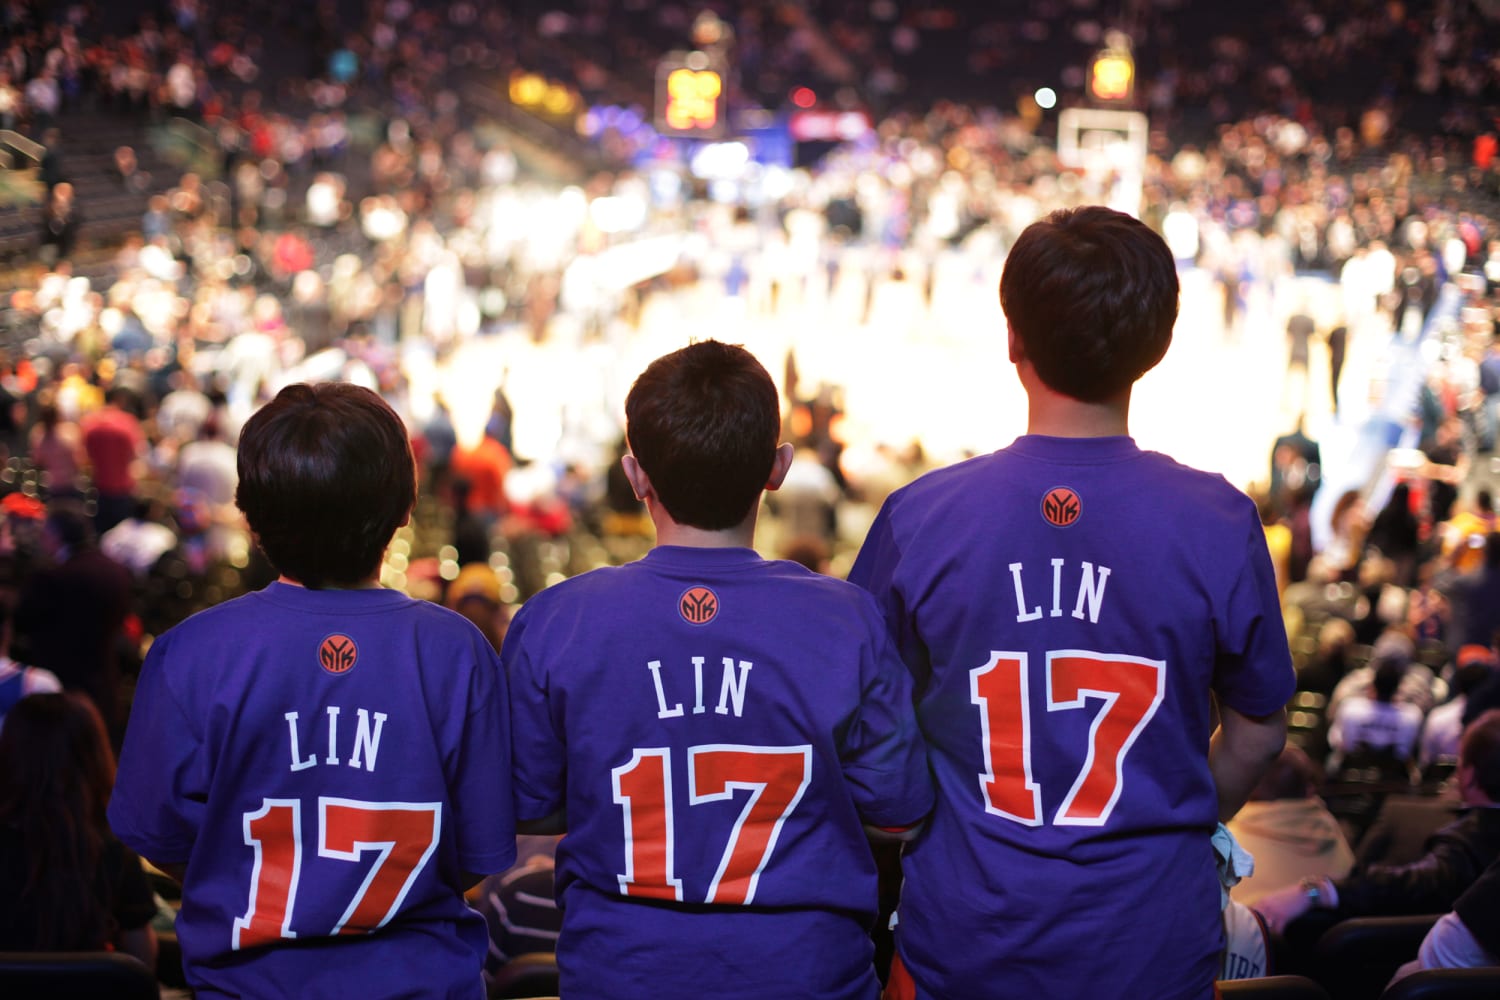 adidas Hosts Jeremy Lin Meet & Greet At Foot Locker Culver City